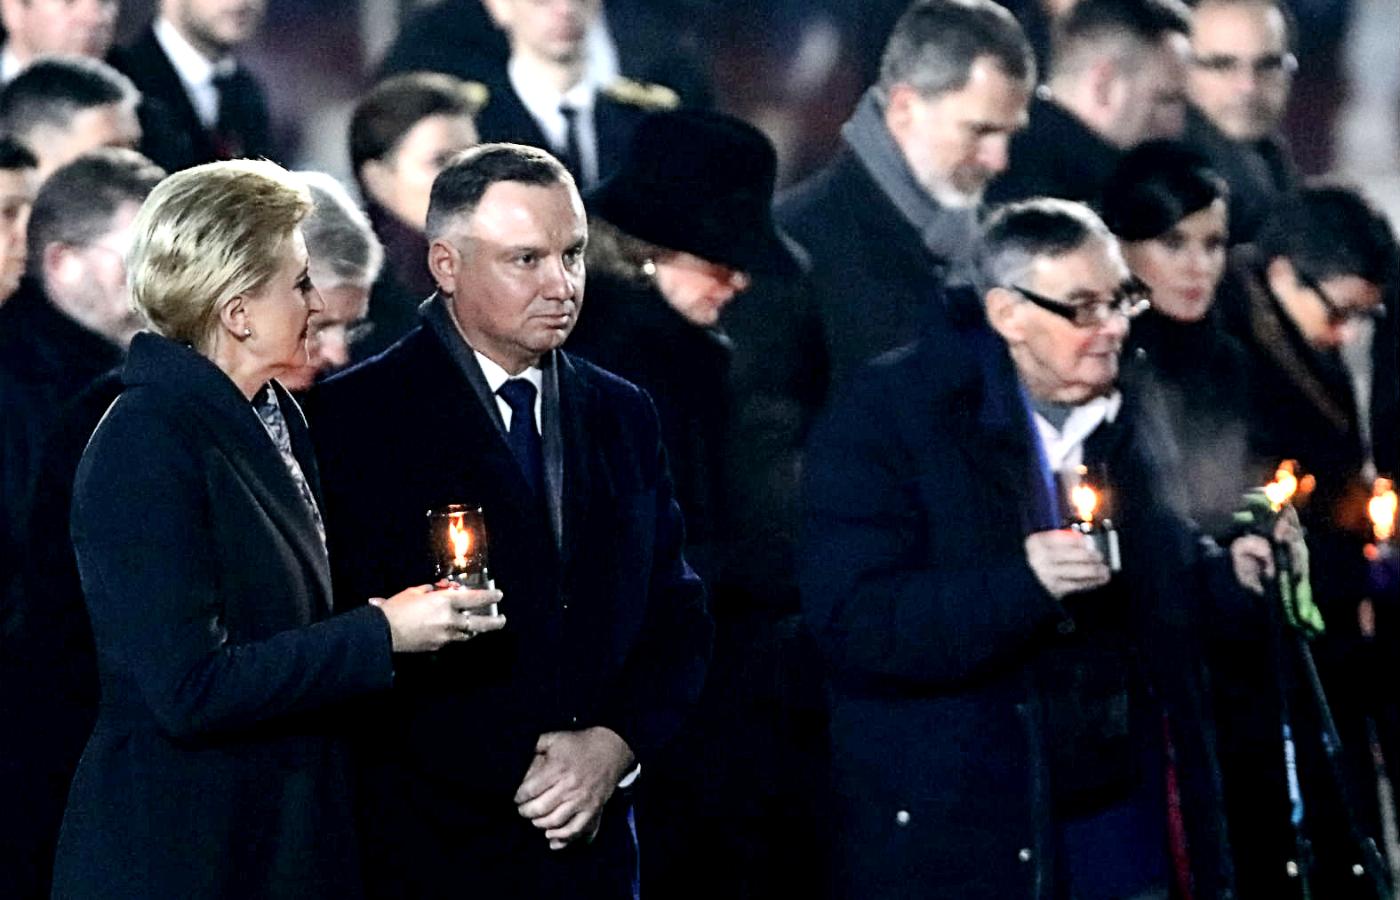 Para prezydencka w towarzystwie Mariana Turskiego postawiła na koniec uroczystości znicz pamięci na terenie obozu Auschwitz-Birkenau.